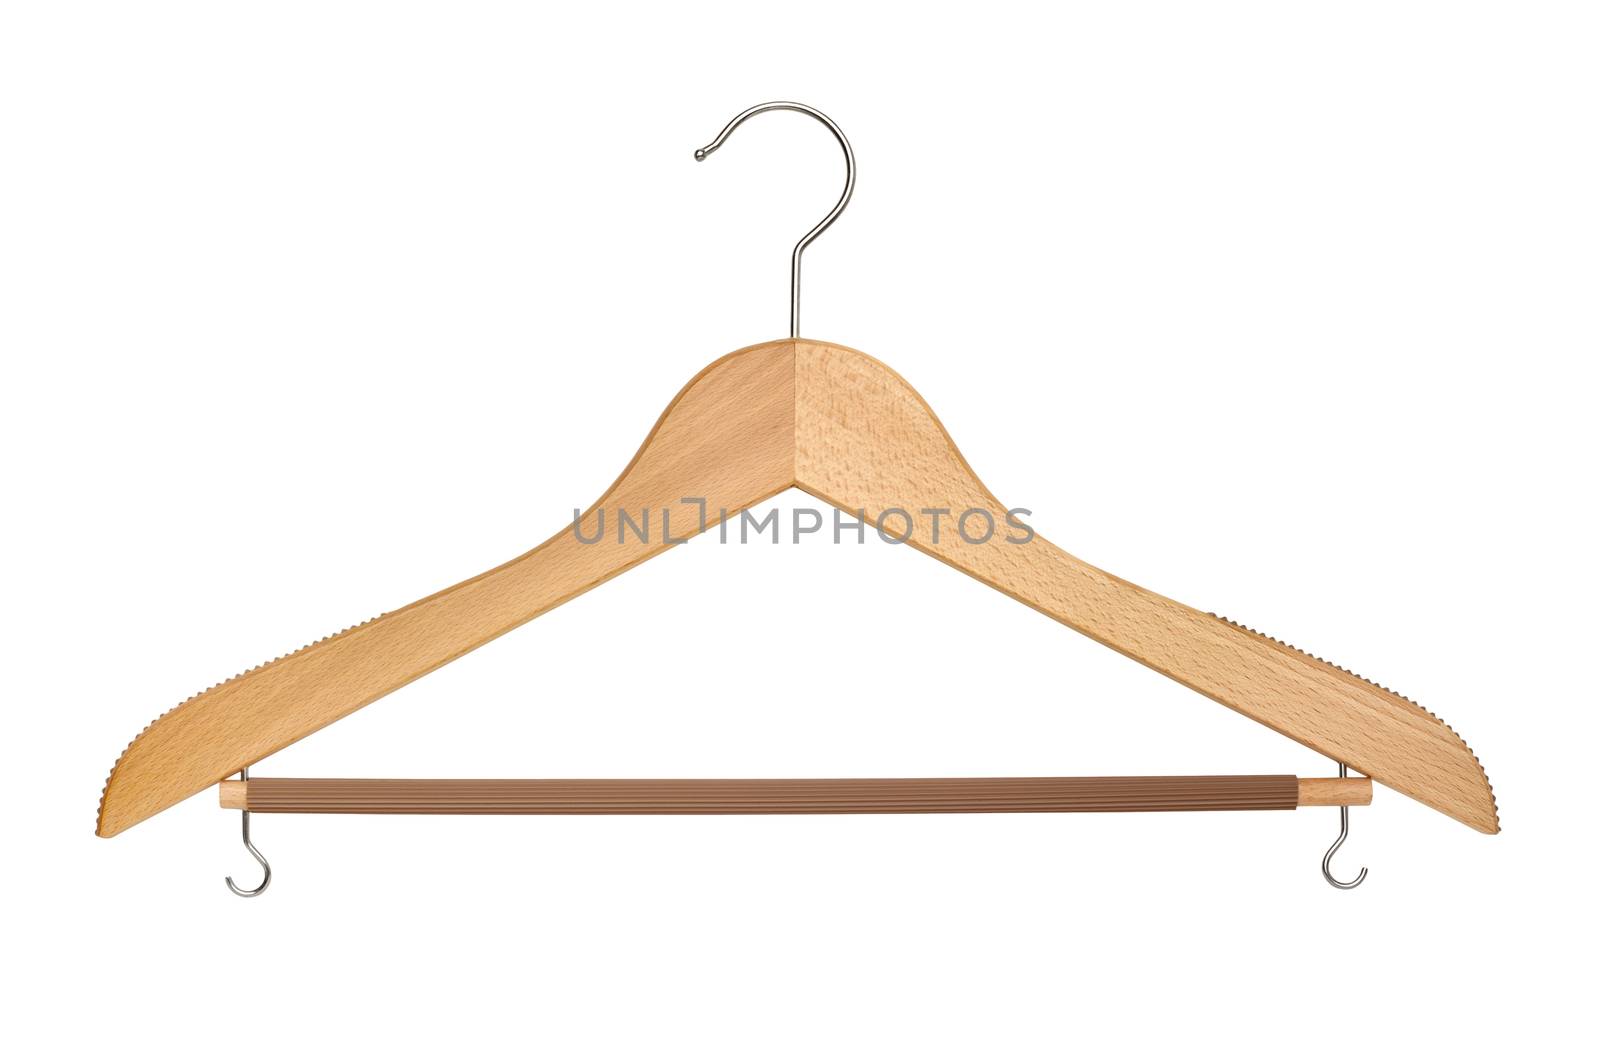 Coat hanger cutout by vkstudio